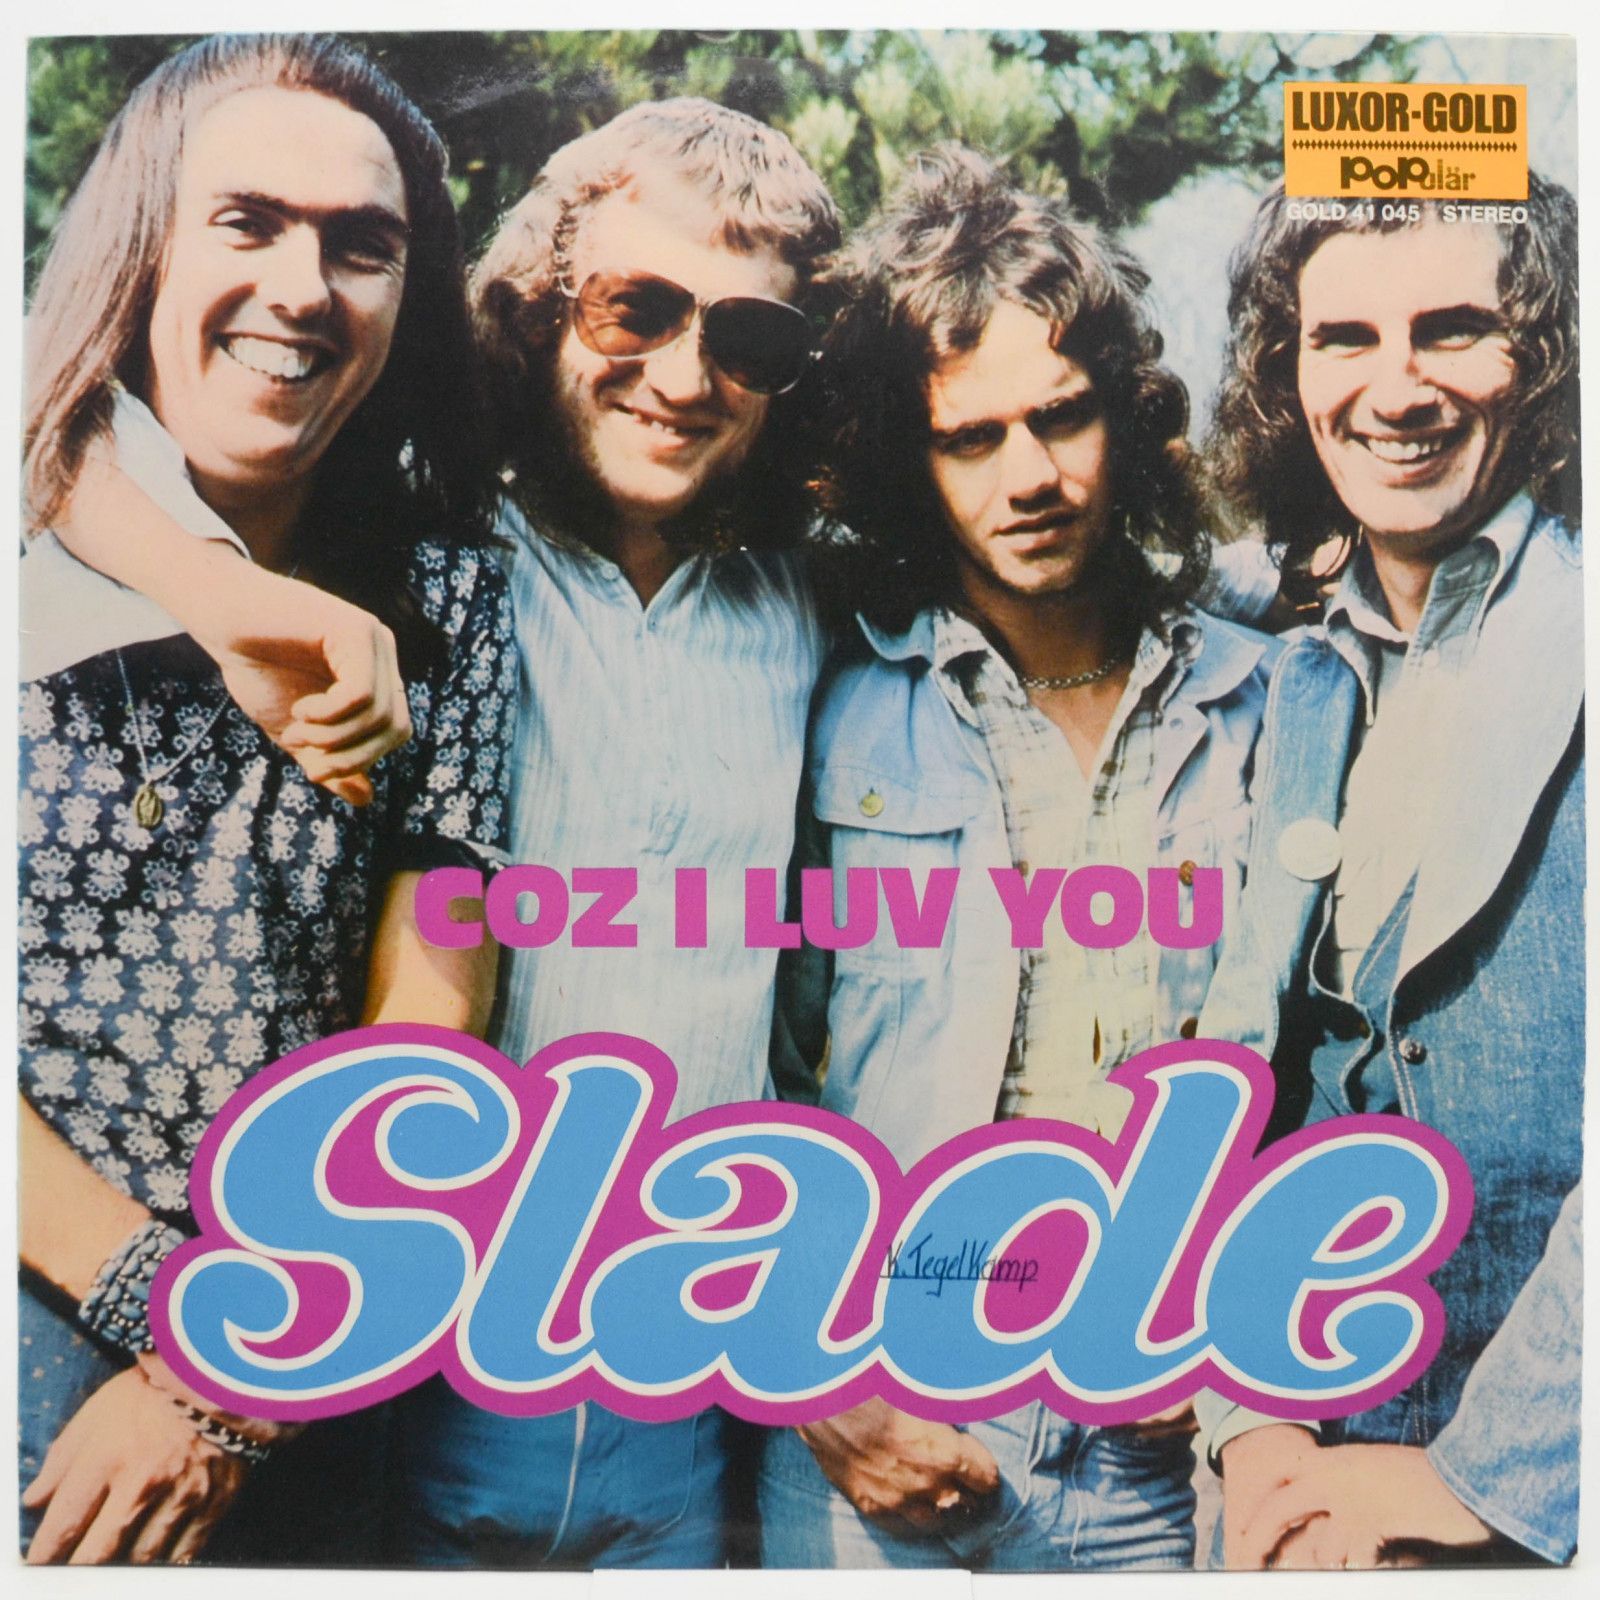 Slade — Coz I Luv You, 1972